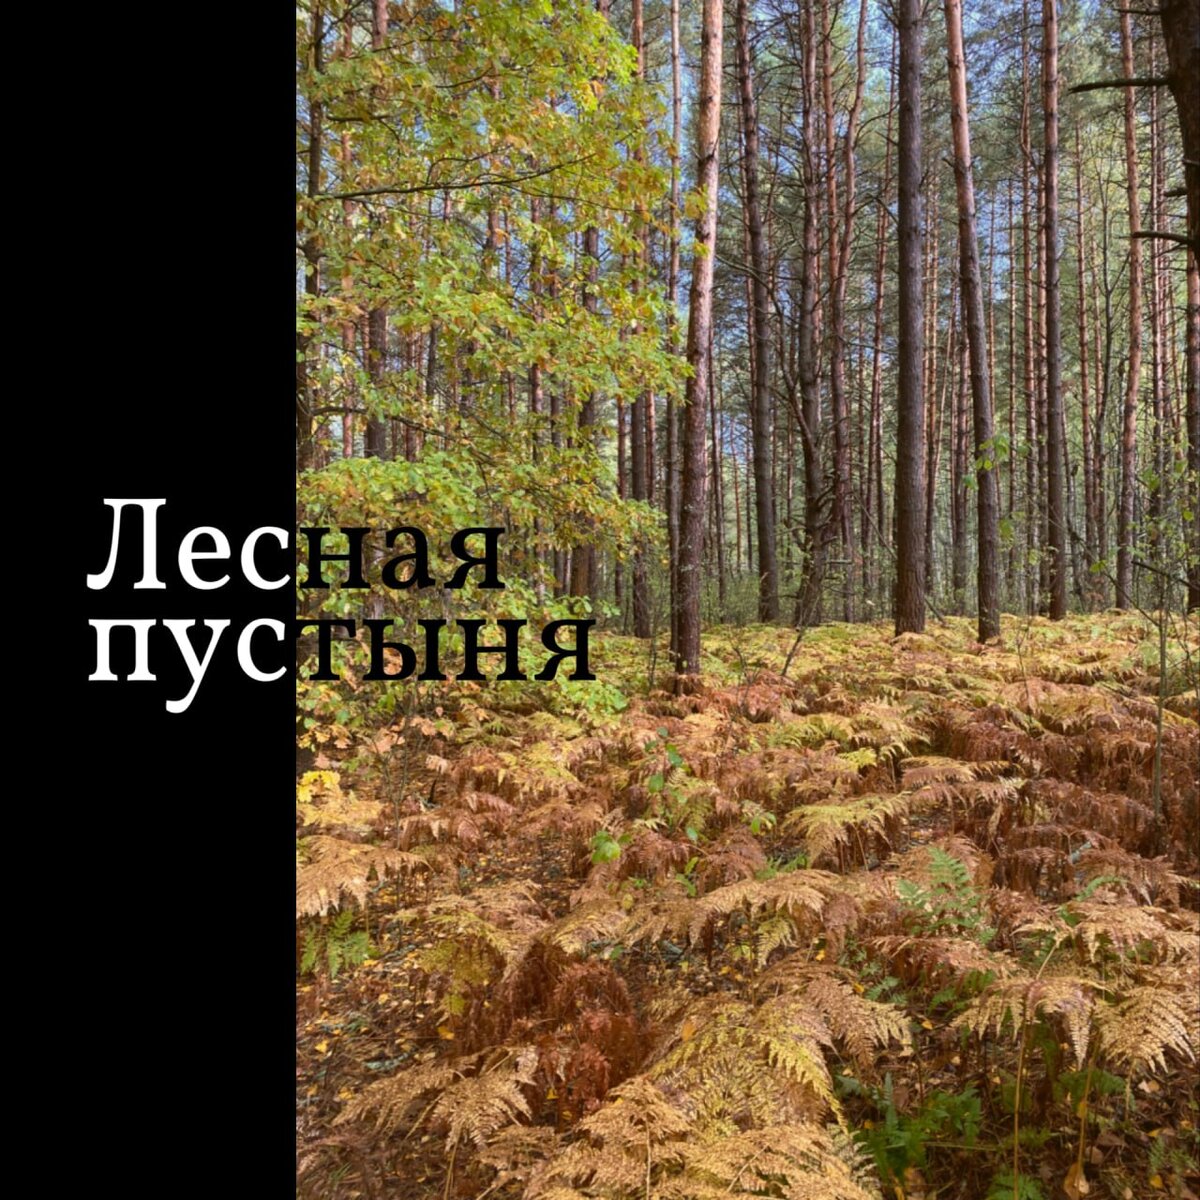  Последние недели копался на грядках в рязанских мещёрских лесах.   На первый взгляд в таком медвежьем углу, кроме установления советской власти, исторических событий быть не могло.